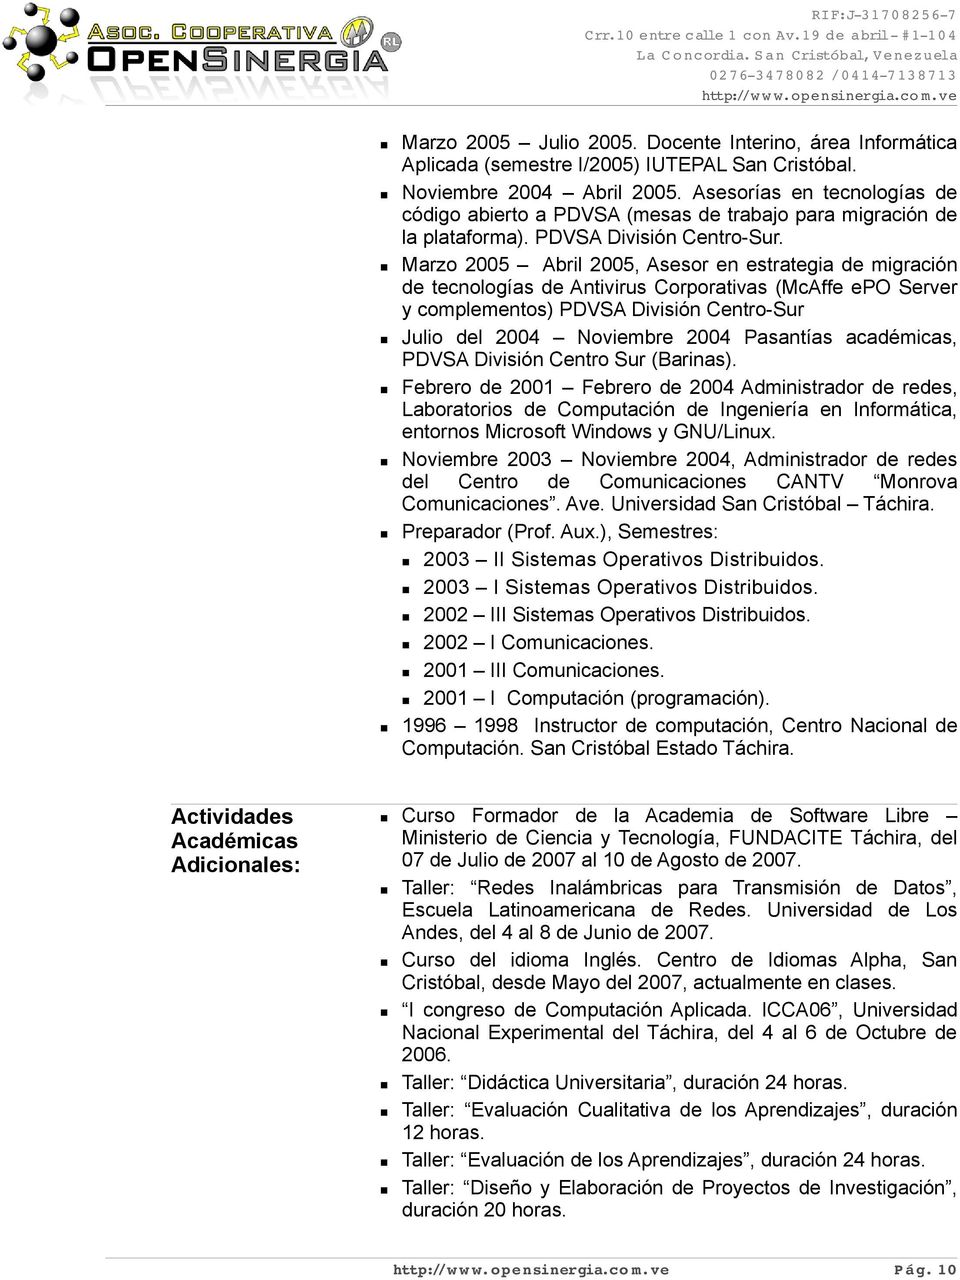 Asesorías e tecologías de código abierto a PDVSA (mesas de trabajo para migració de la plataforma). PDVSA Divisió Cetro-Sur.